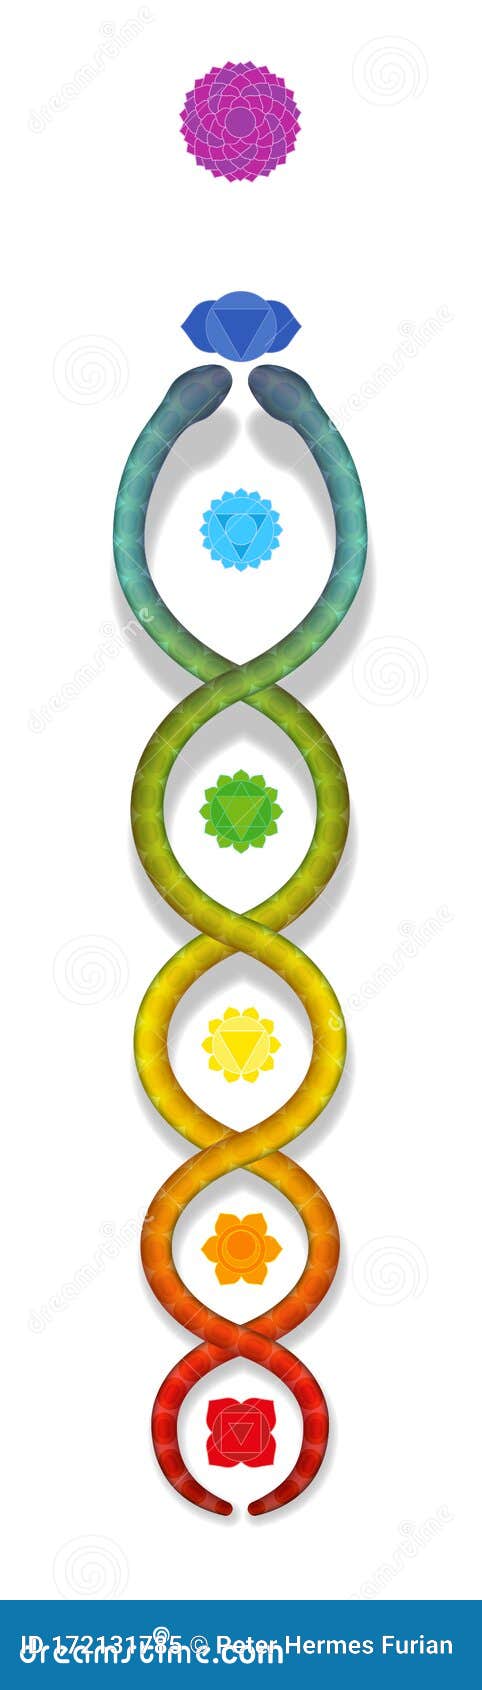 Símbolo De Serpente Kundalini Chakras Arco-íris De Serpente Colorida  Ilustração do Vetor - Ilustração de espiritualidade, sete: 172131785